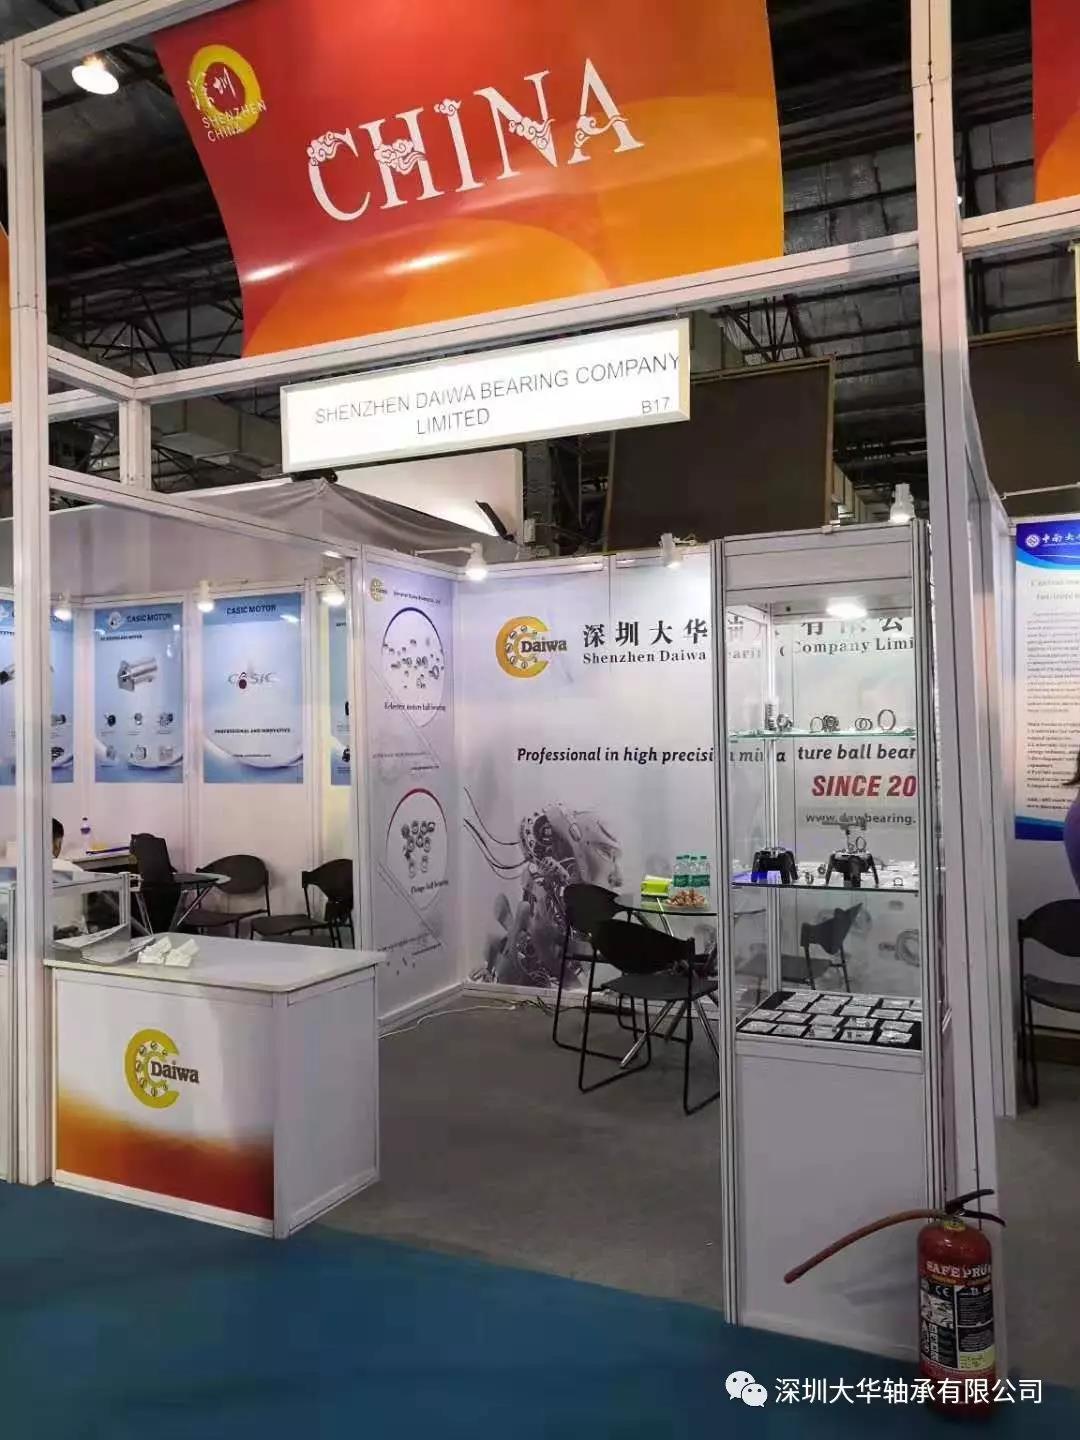 大华轴承亮相2019年印度孟买工业自动化展览会